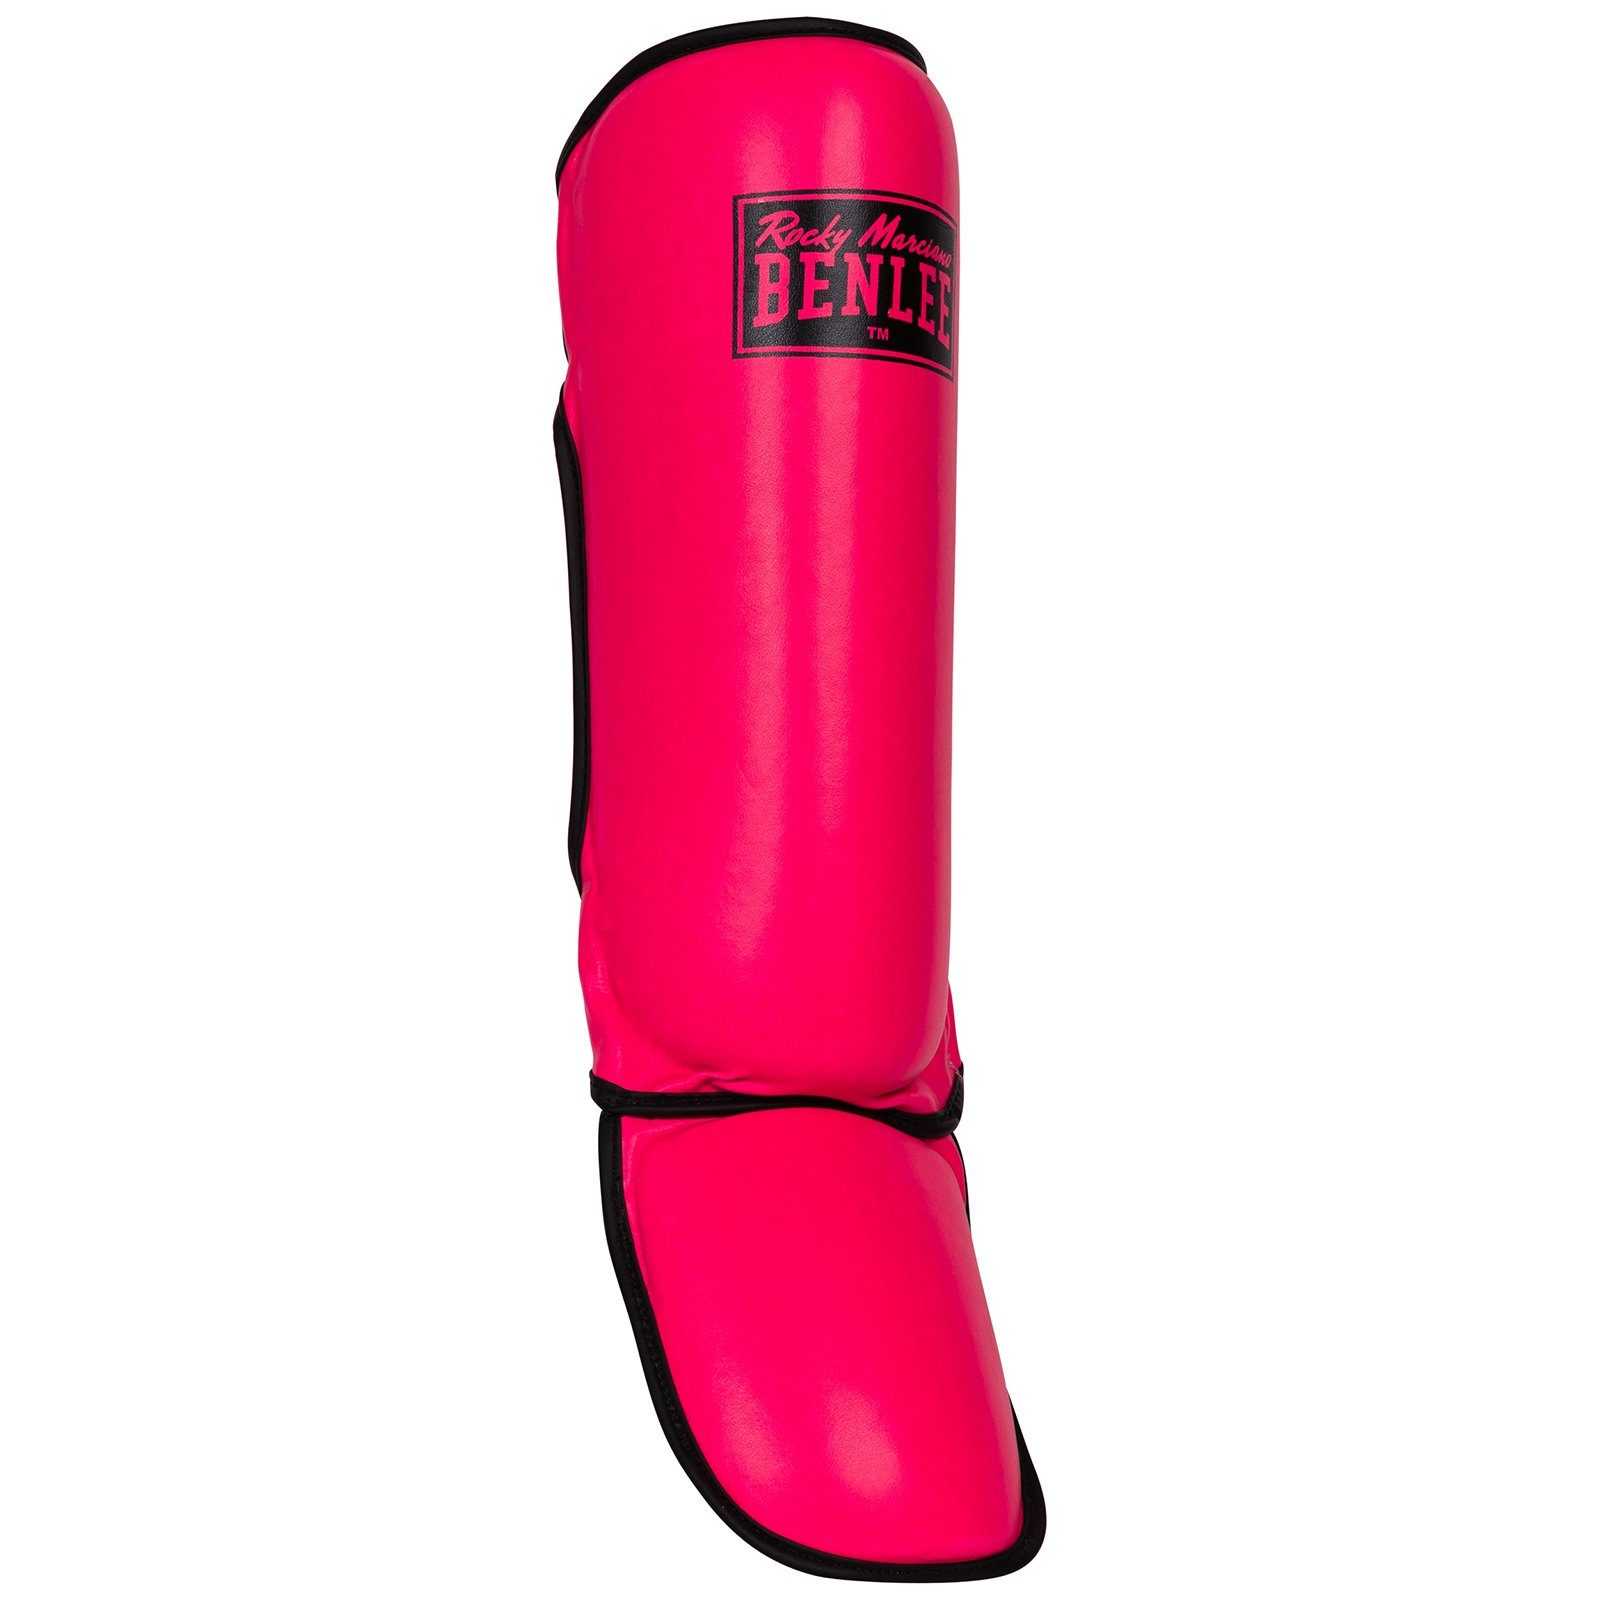 Schienbeinschoner Kampfsport Benlee Neon/Pink GUARDIAN Rocky Marciano